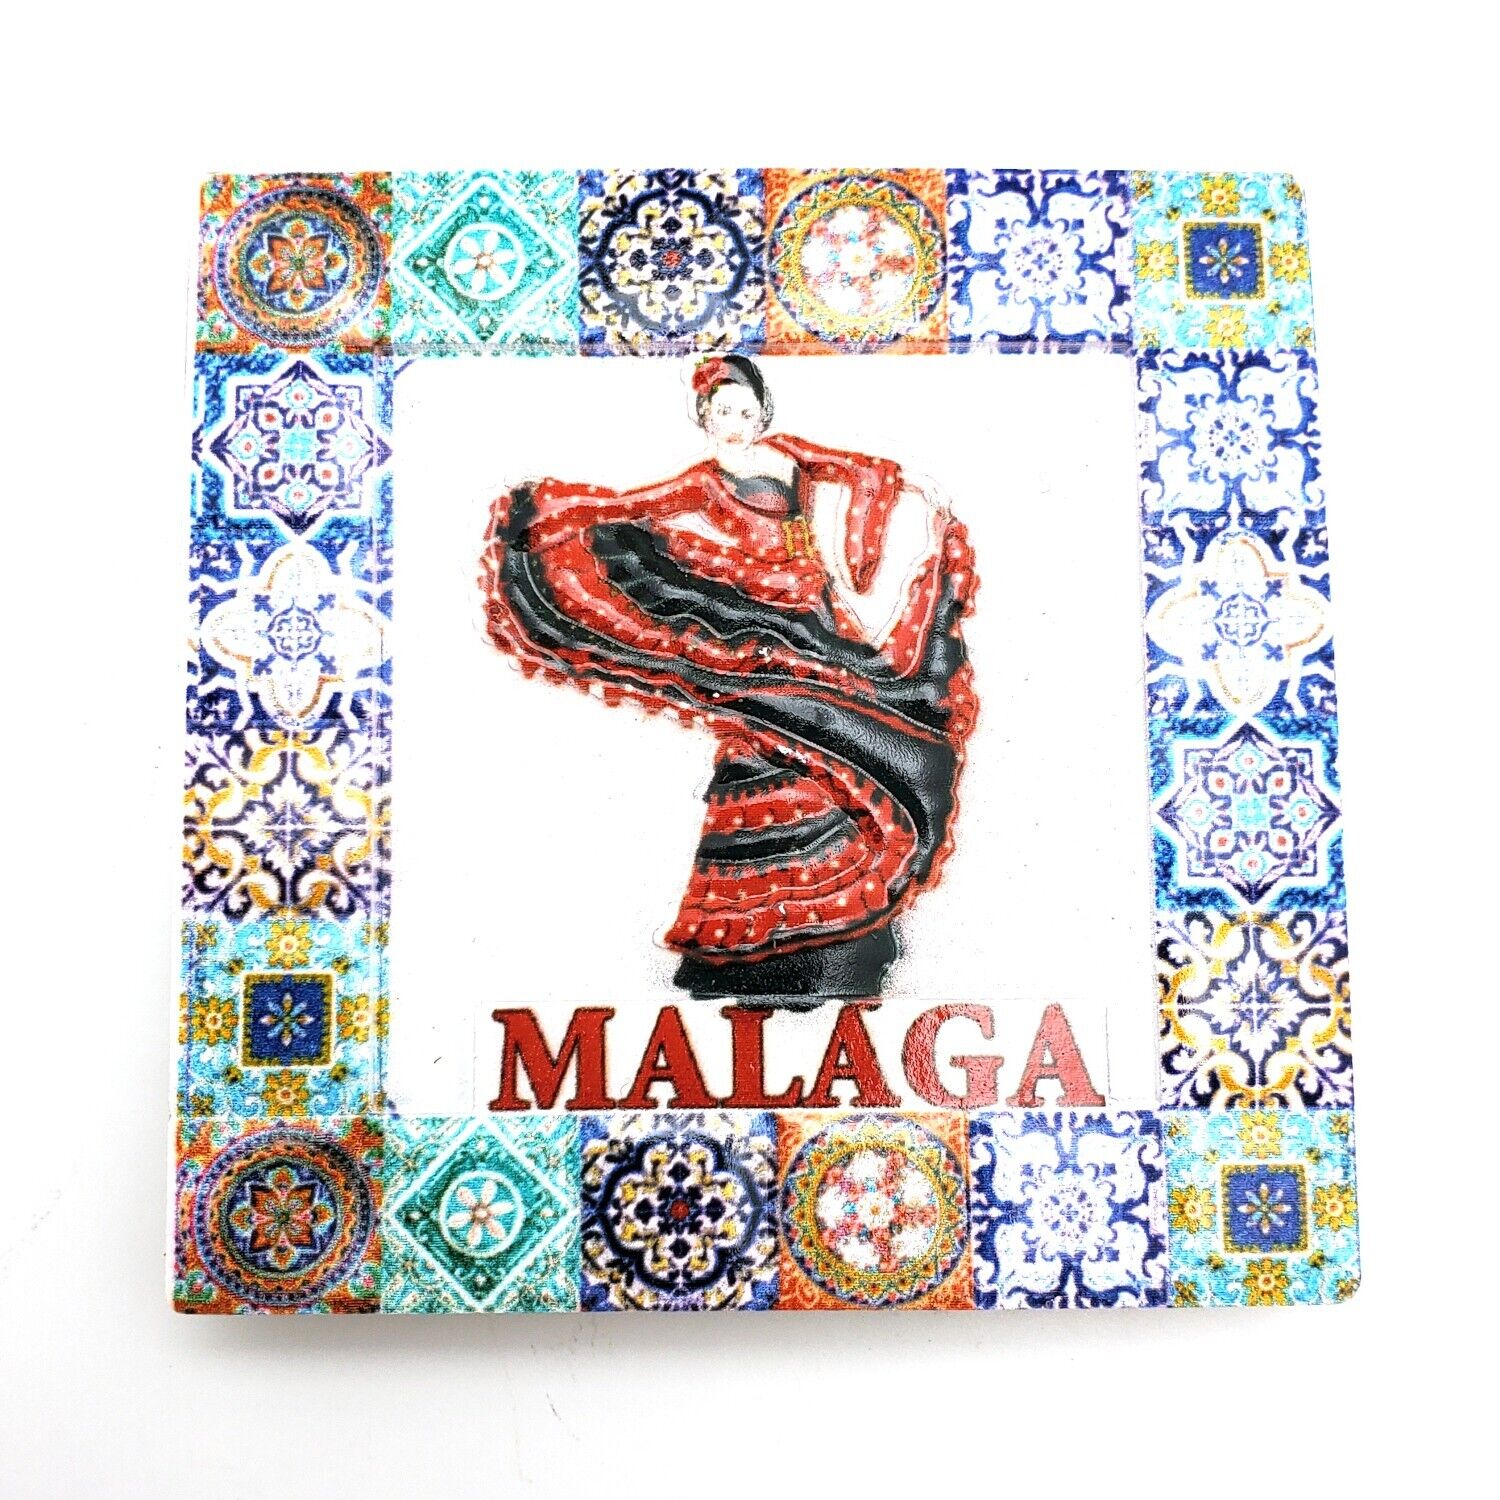 Malaga Spain Refrigerator Fridge Magnet Travel Souvenir City Flamenco Dancer